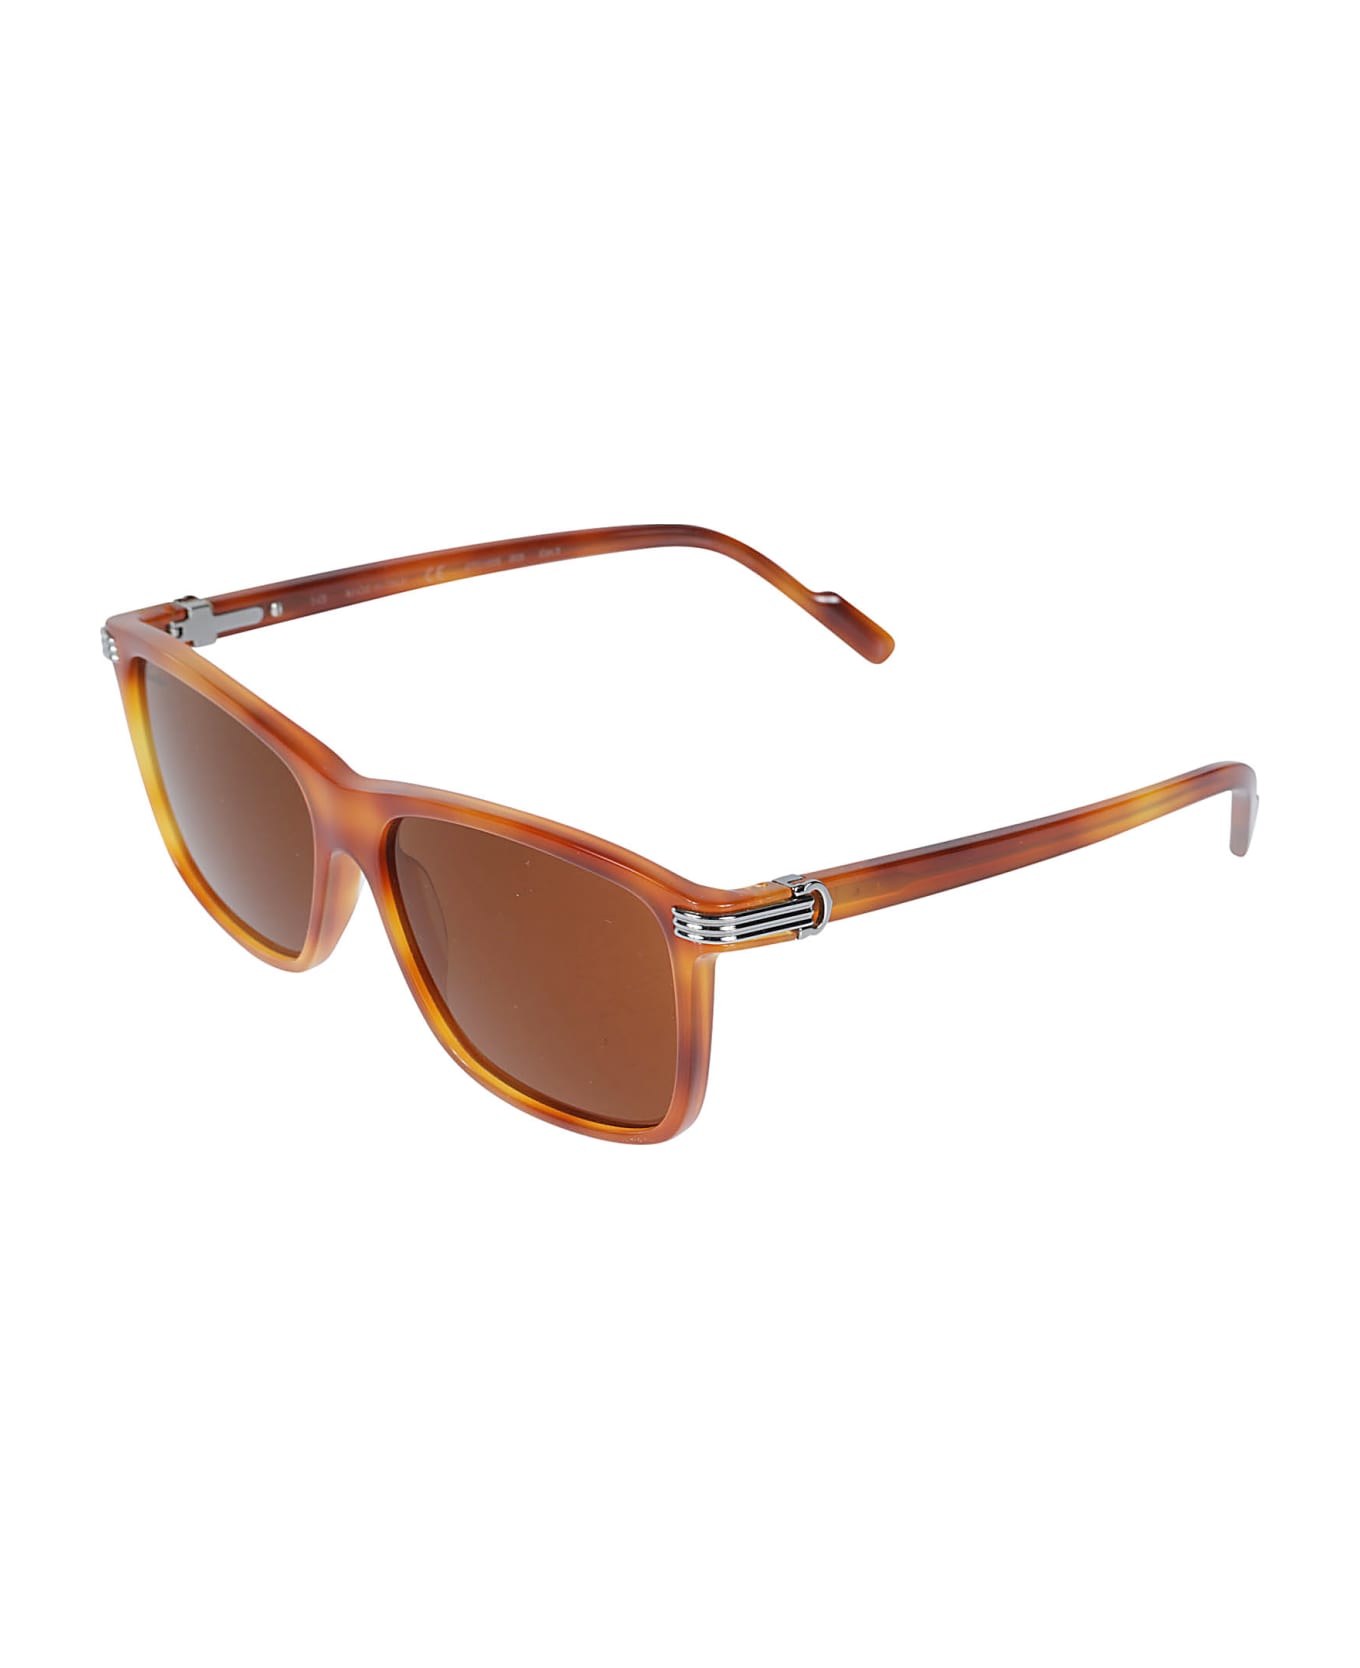 Cartier Eyewear Square Frame Sunglasses - 003 Sunglasses ALDO Albentariel 16174563 650